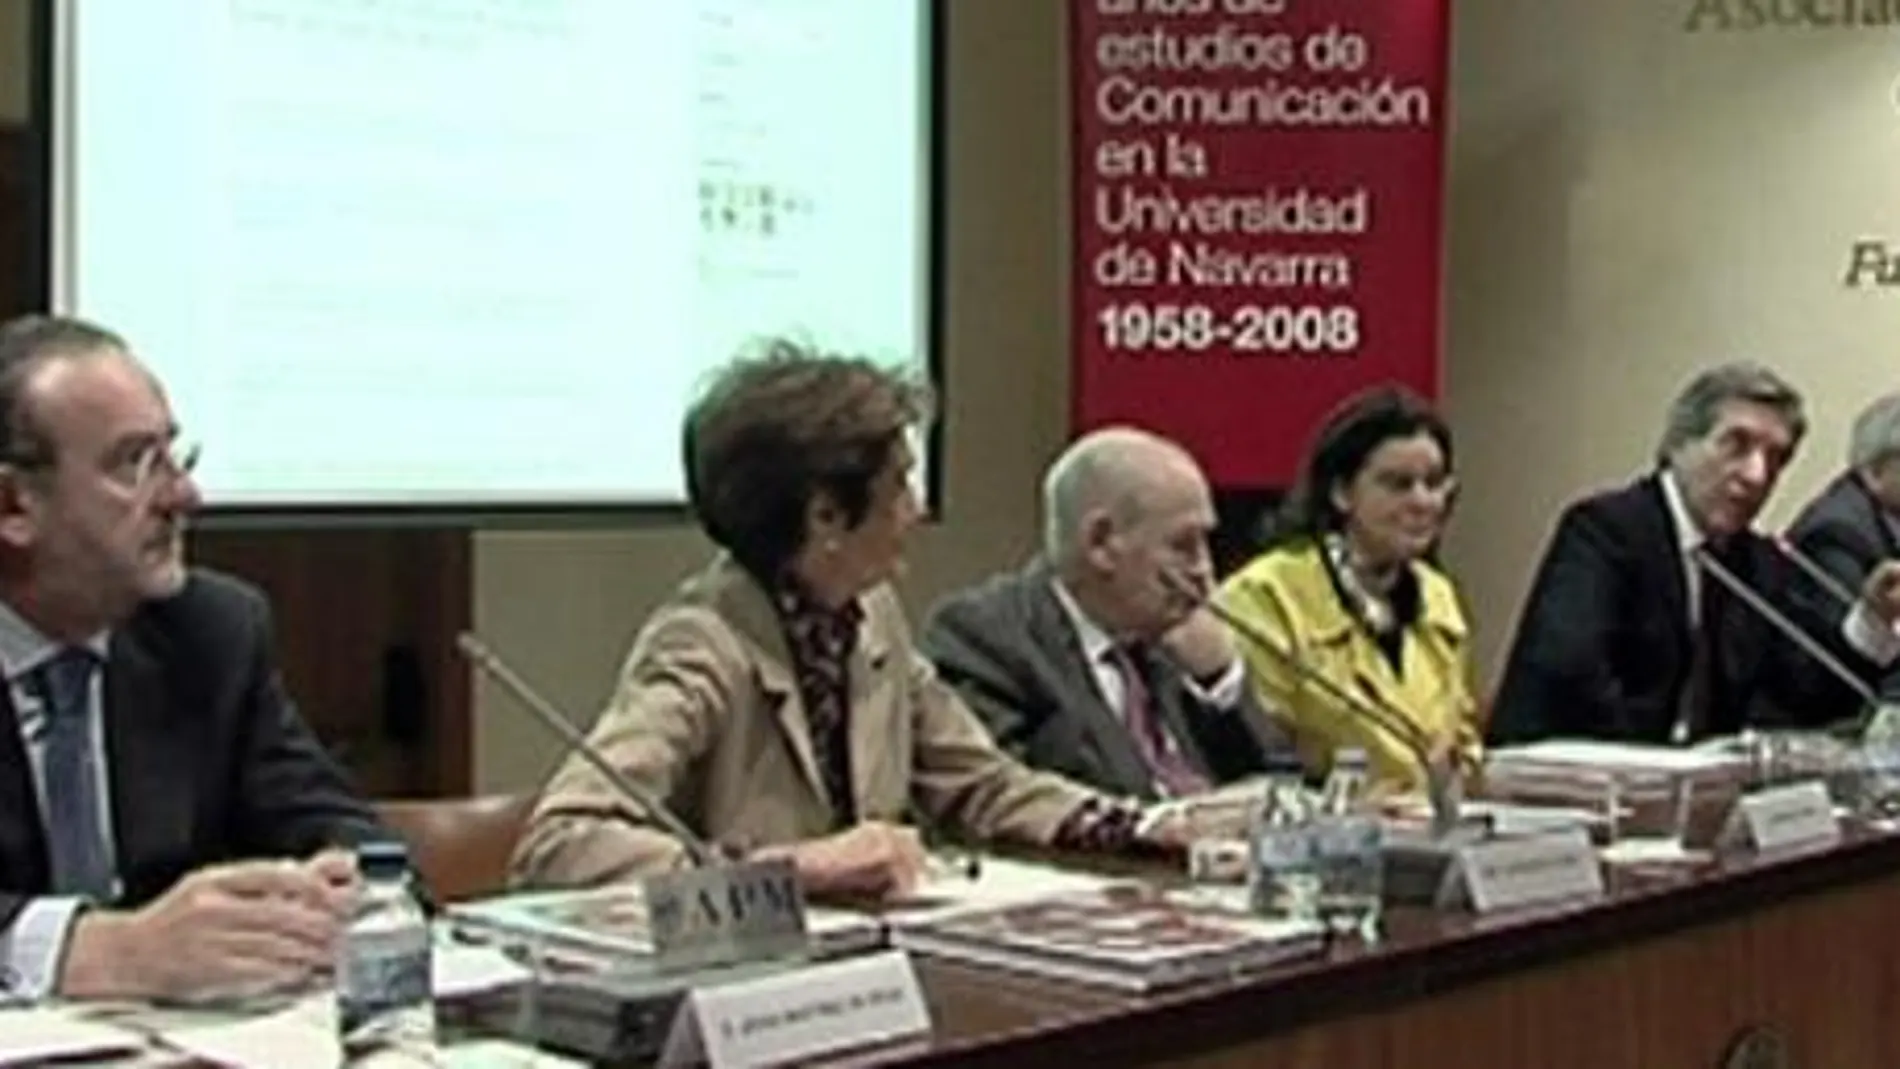 La Universidad de Navarra celebra 50 años de la facultad de Comunicación